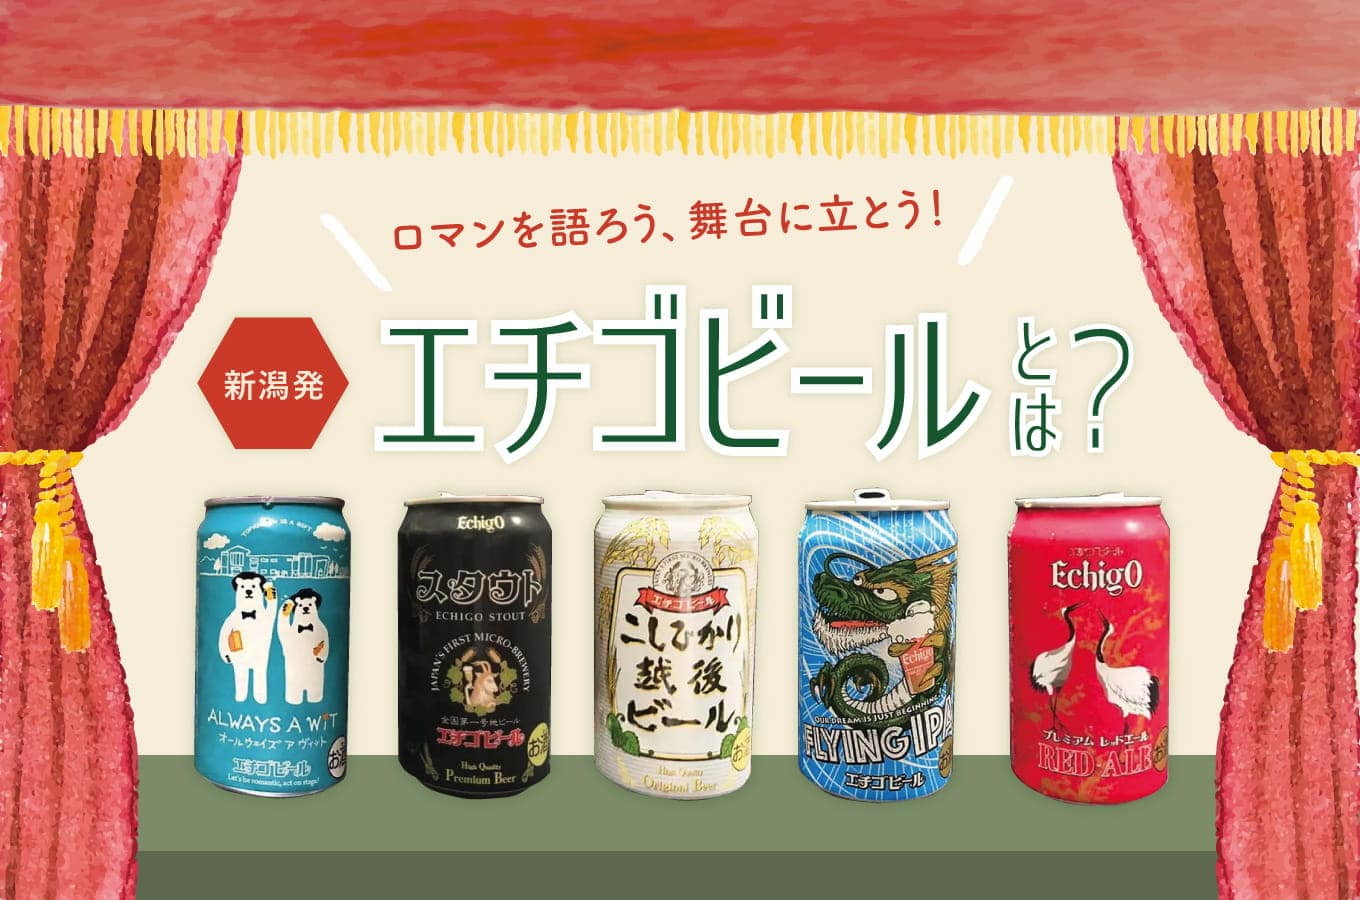 エチゴビールとは？日本で最初に地ビールの製造を始めた新潟県の老舗ブルワリー